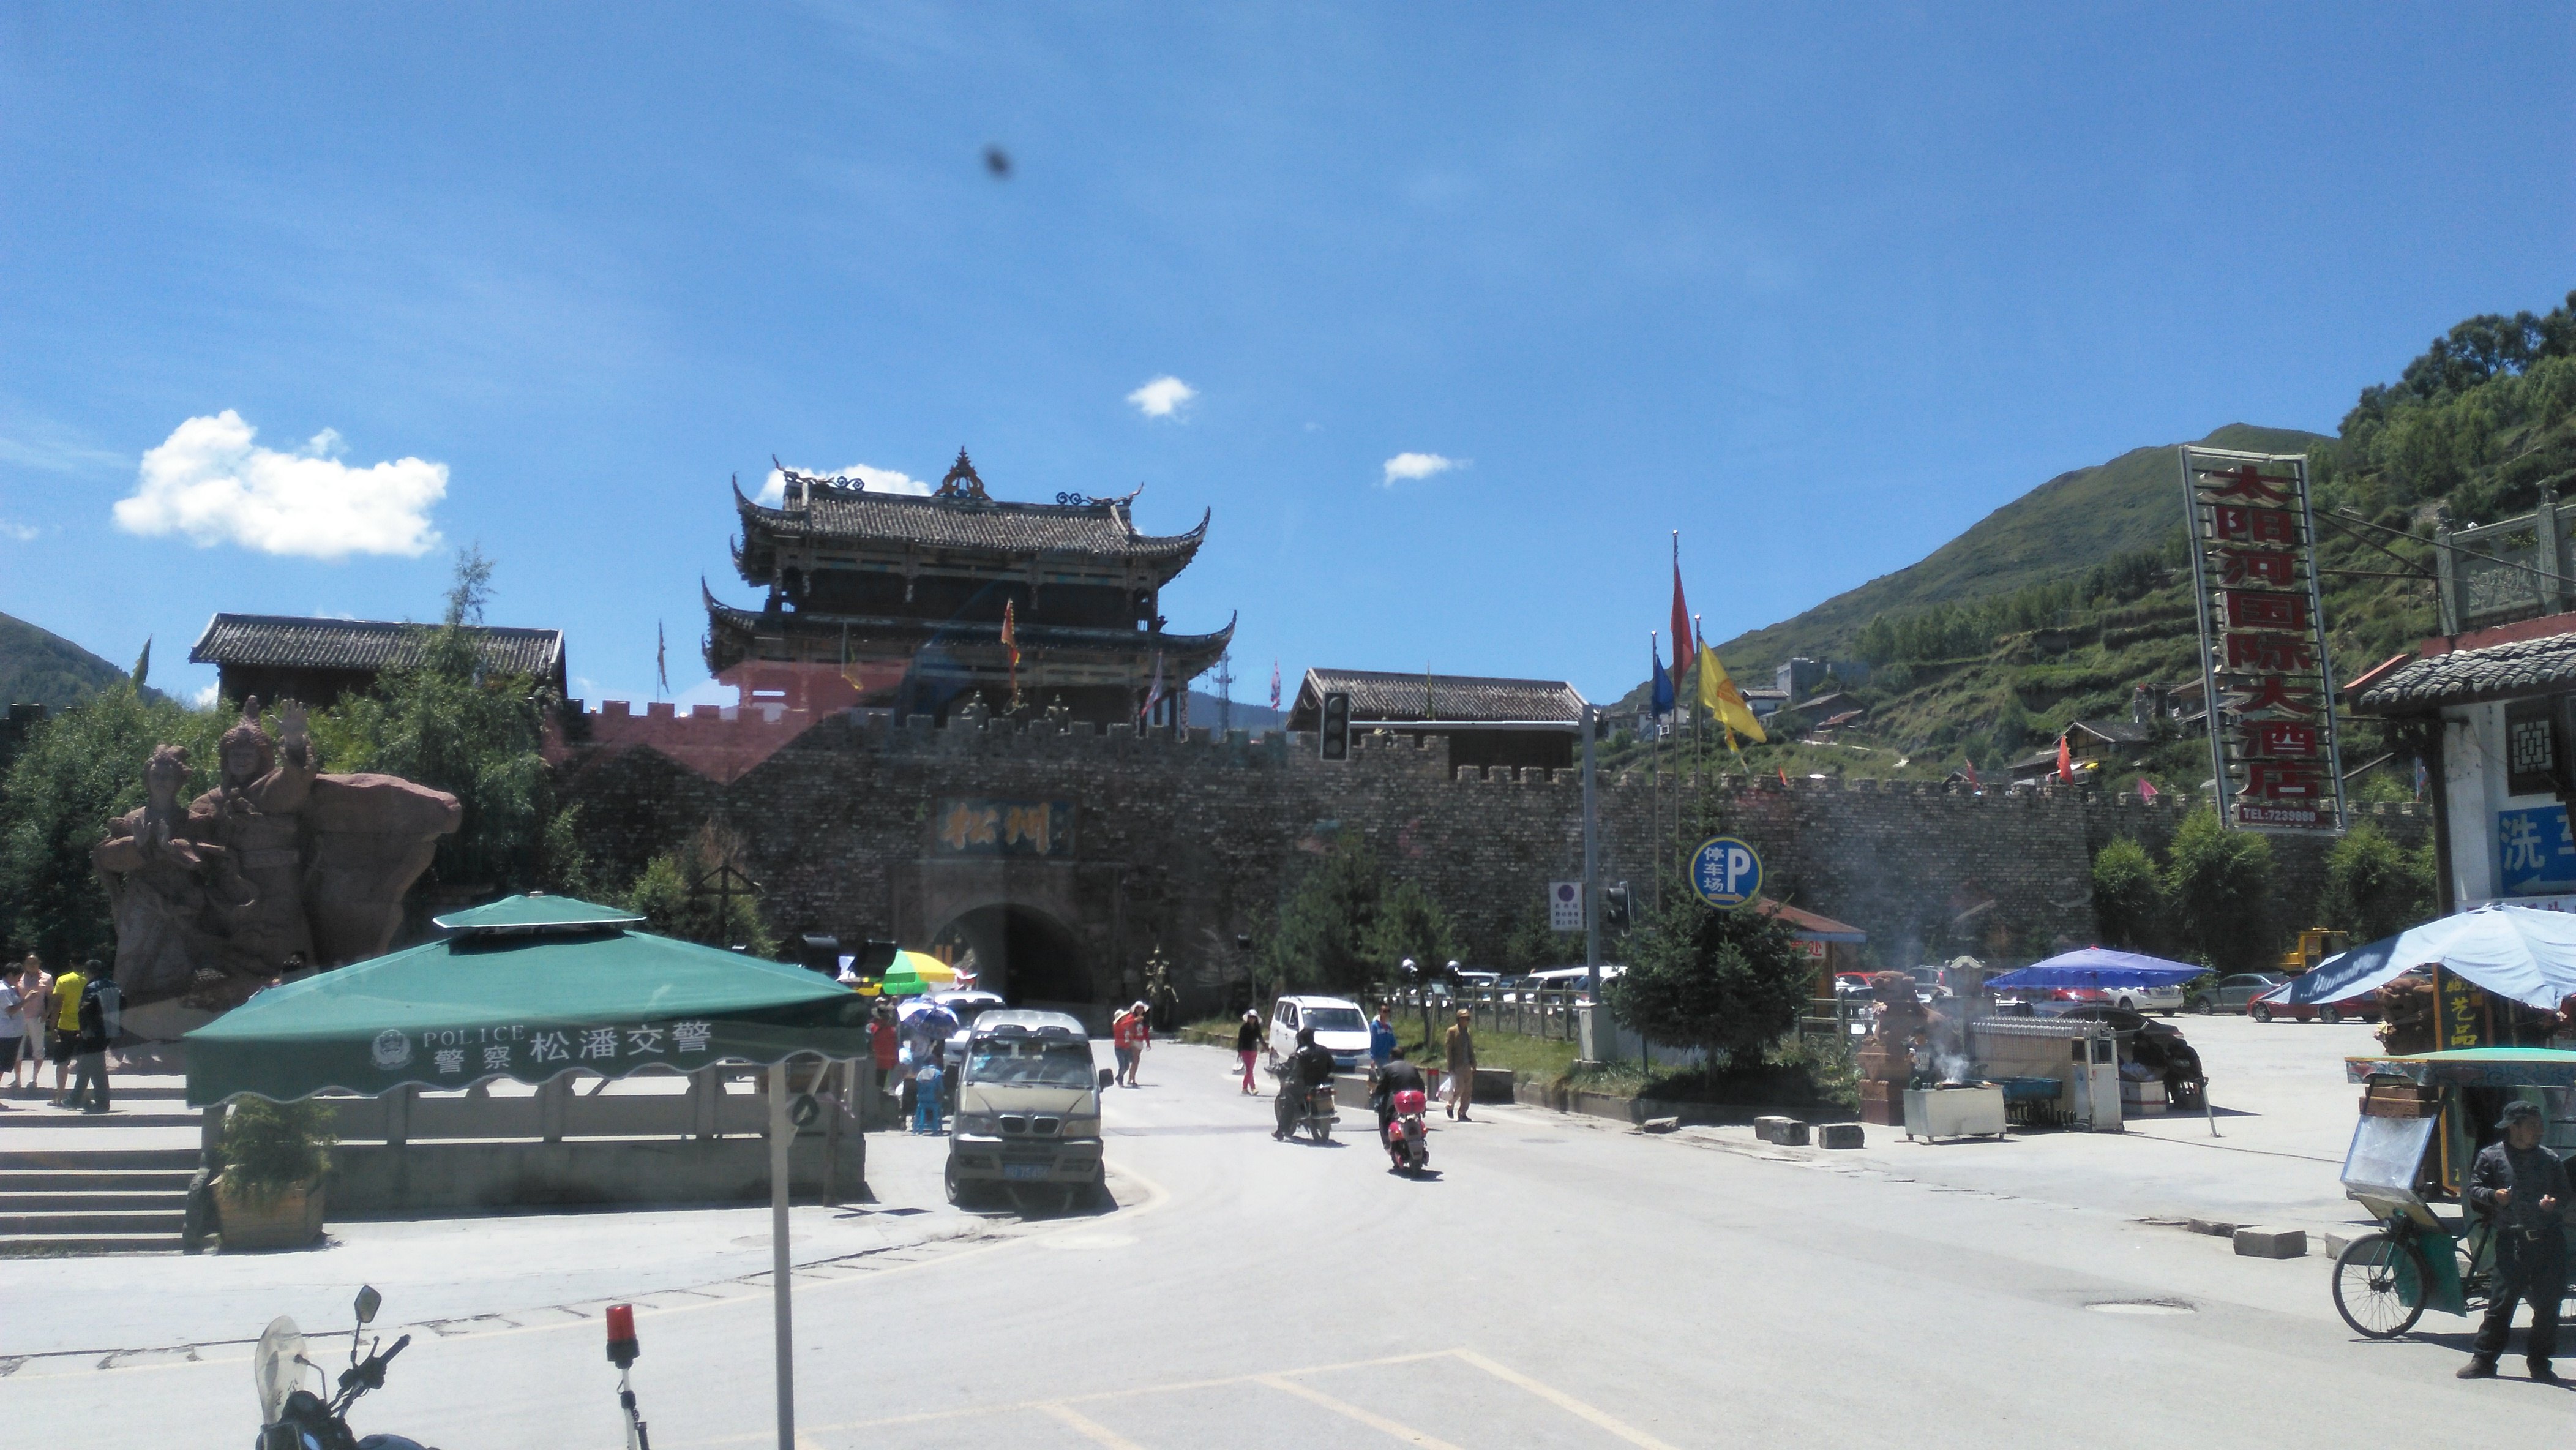 松潘 松潘县 松潘县隶属于四川省阿坝藏族羌族自治州,位于四川省